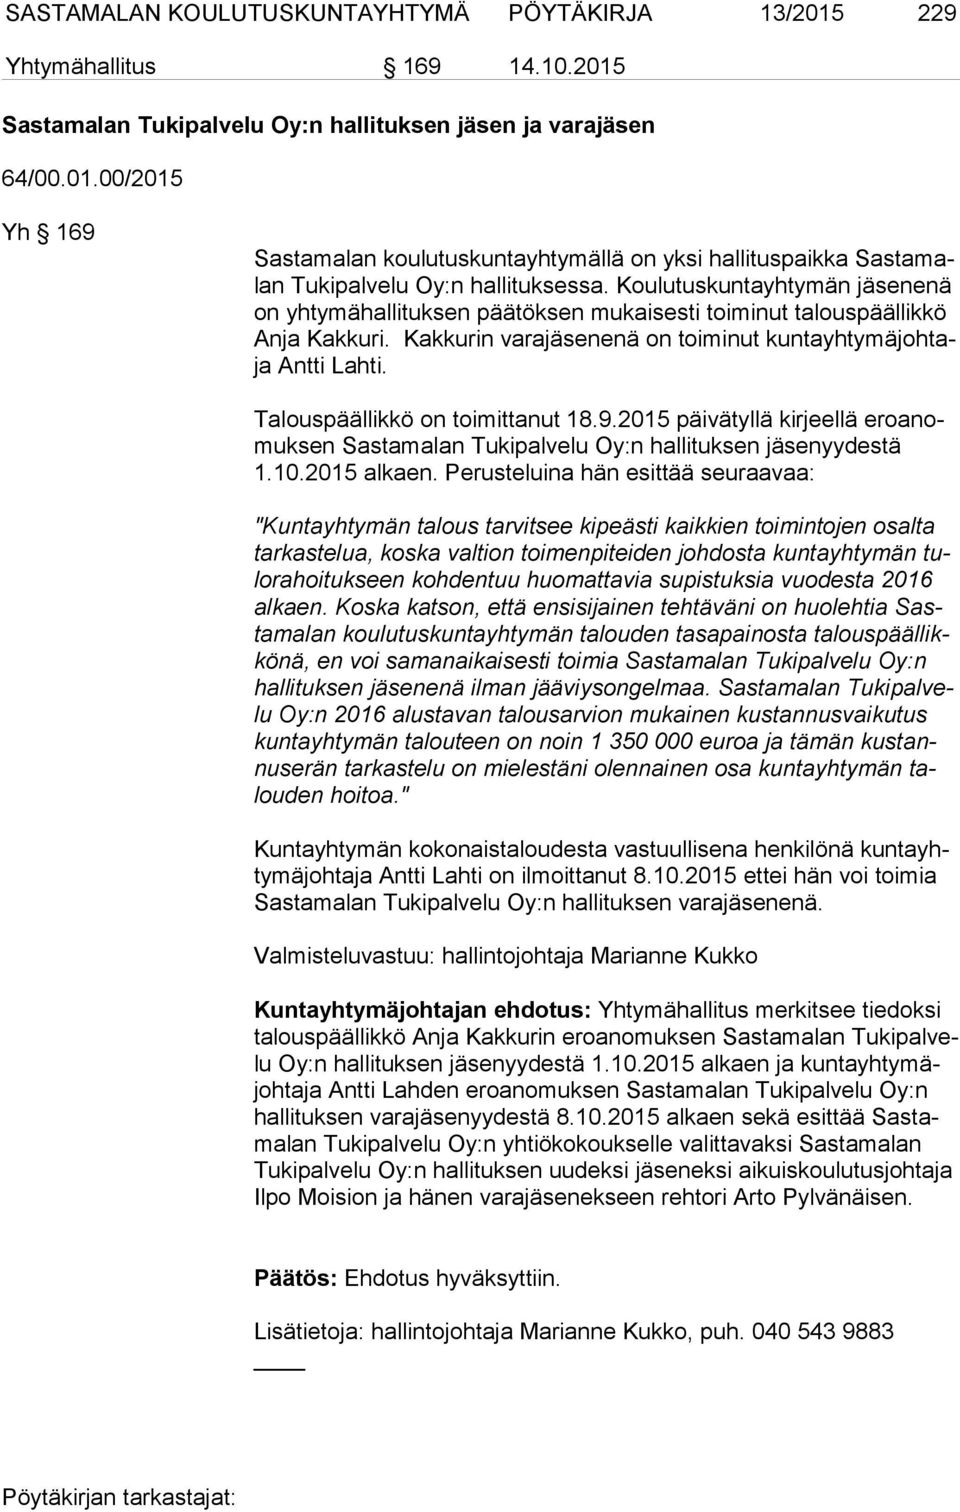 Talouspäällikkö on toimittanut 18.9.2015 päivätyllä kirjeellä ero anomuk sen Sastamalan Tukipalvelu Oy:n hallituksen yydestä 1.10.2015 alkaen.